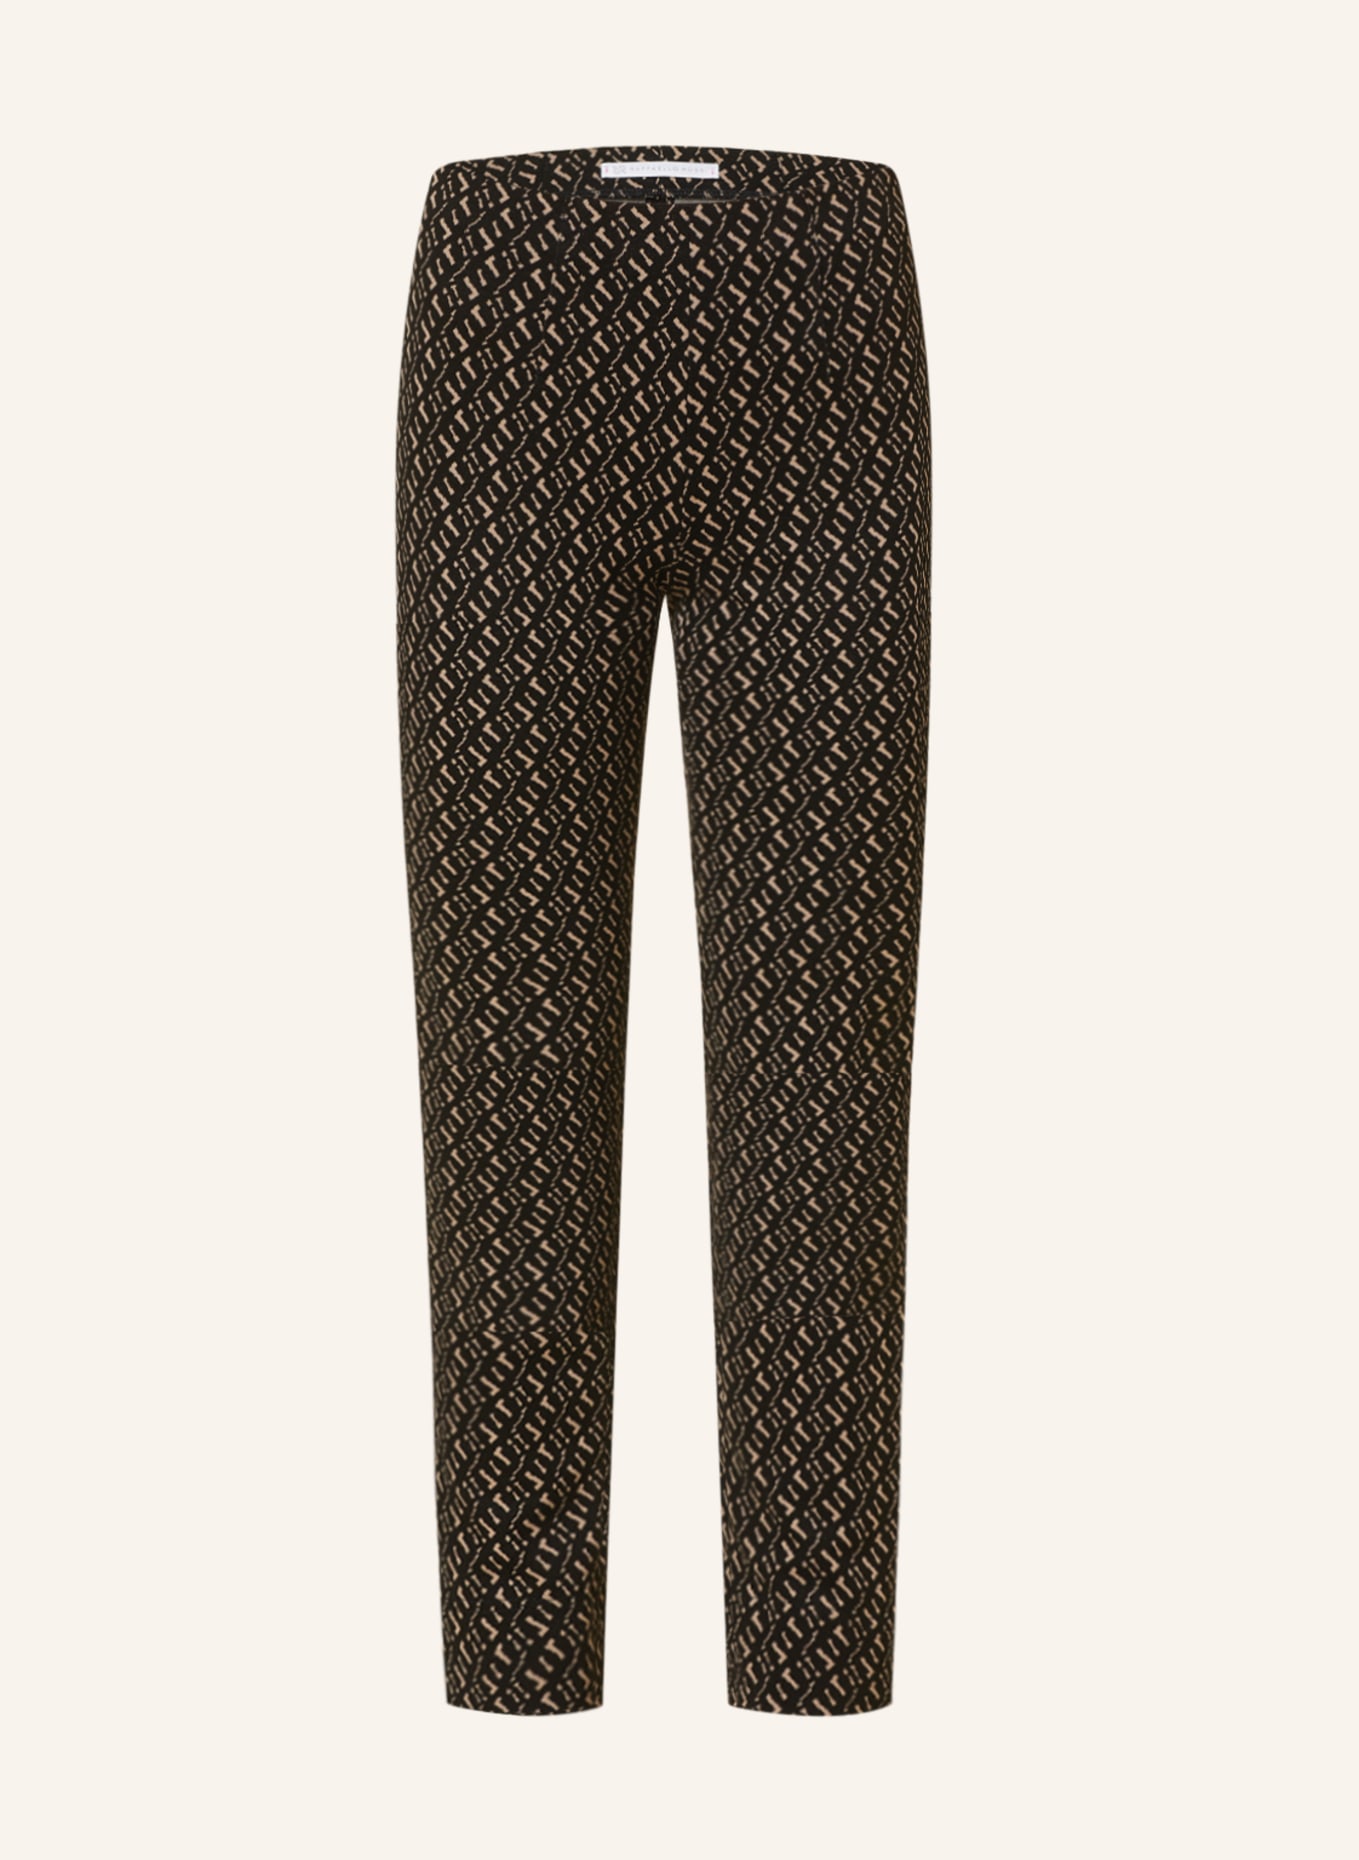 RAFFAELLO ROSSI Trousers PENNY, Color: DARK BROWN/ BEIGE (Image 1)